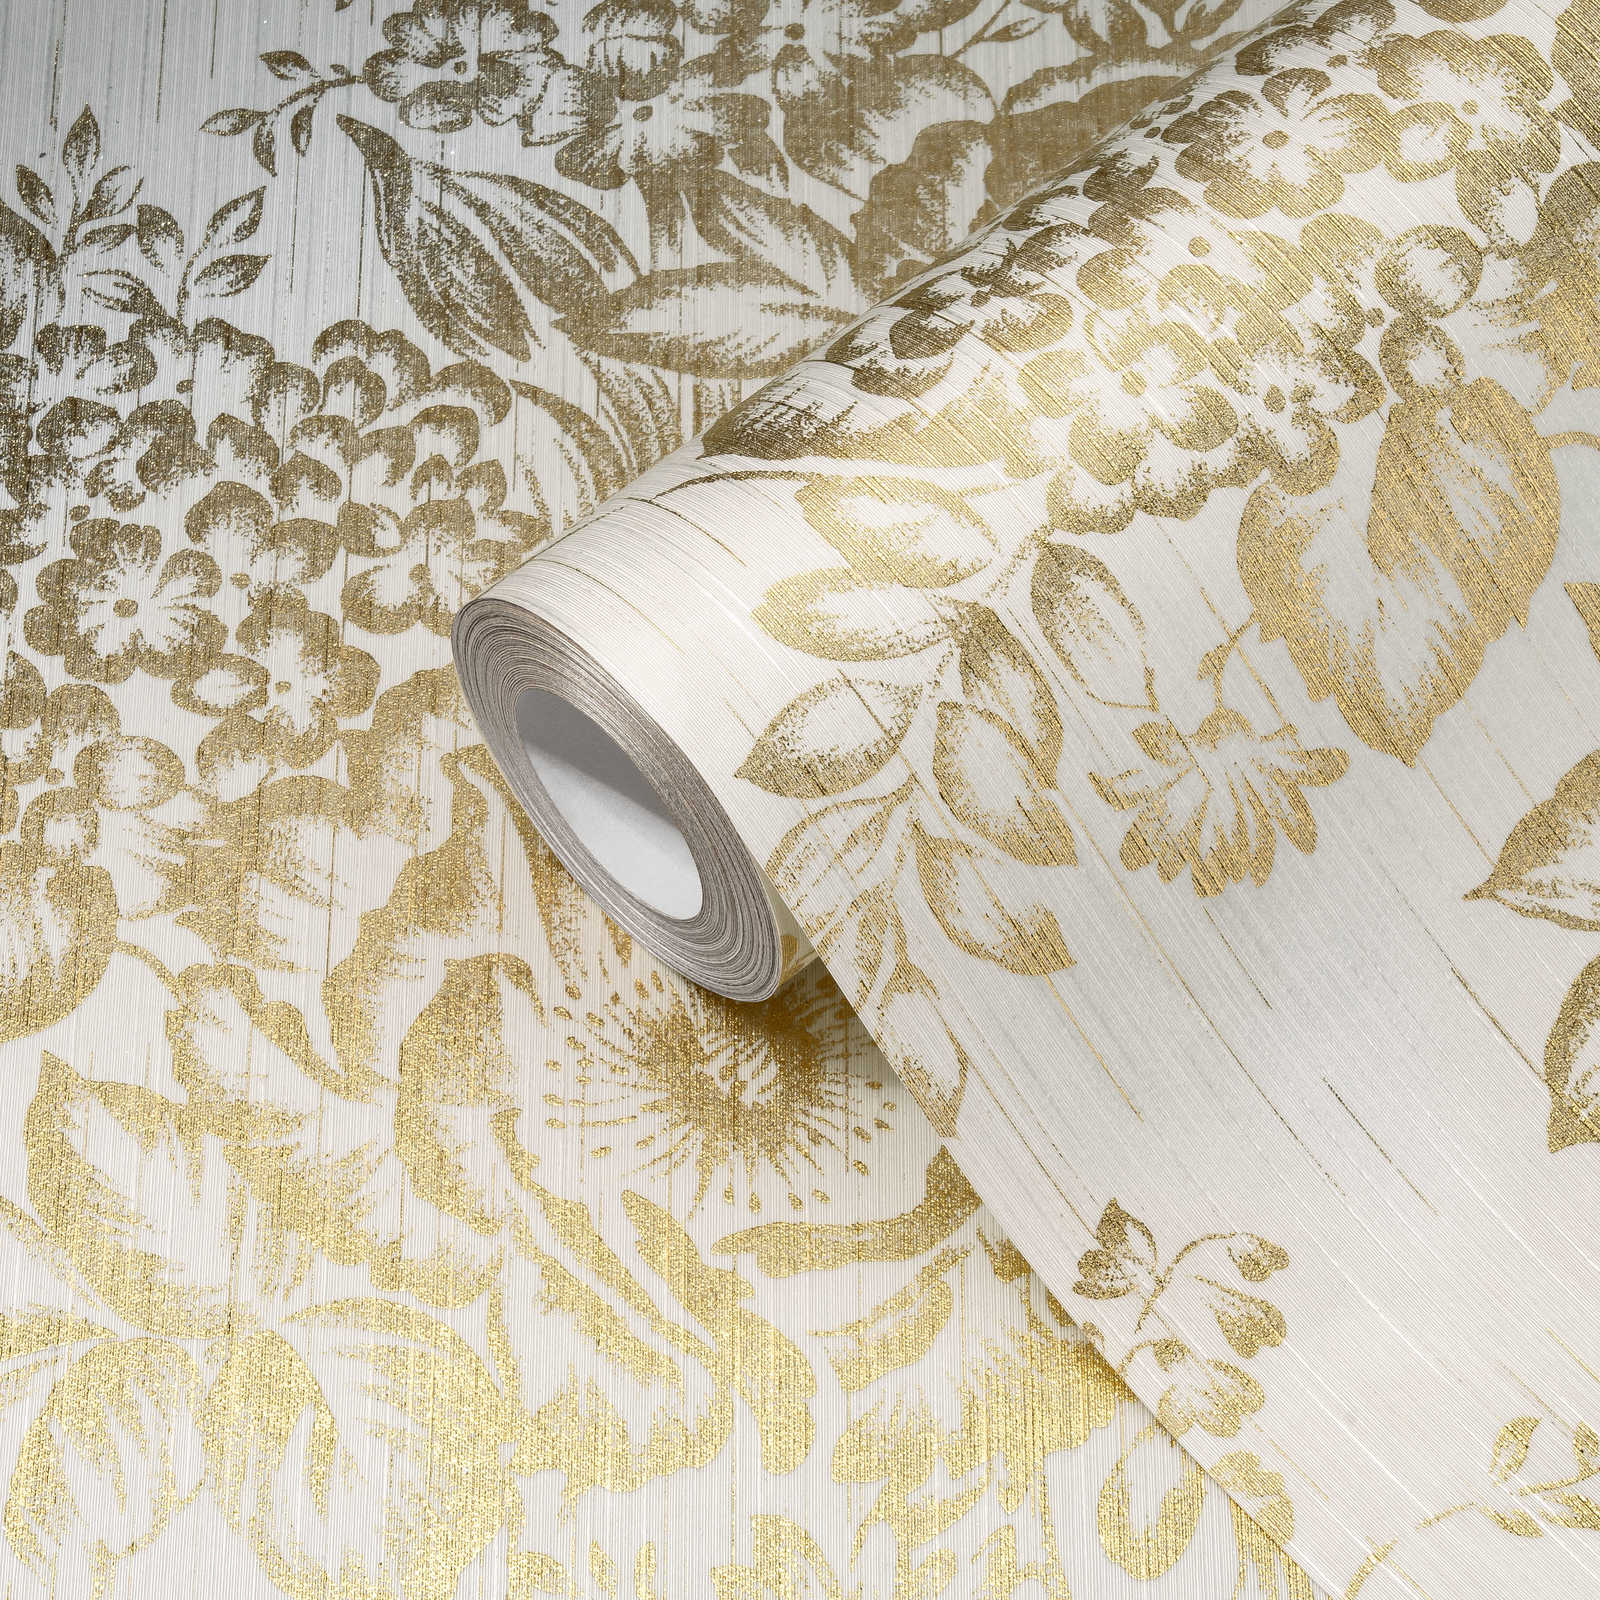             Strukturtapete mit goldenem Blütenmuster – Gold, Weiß
        